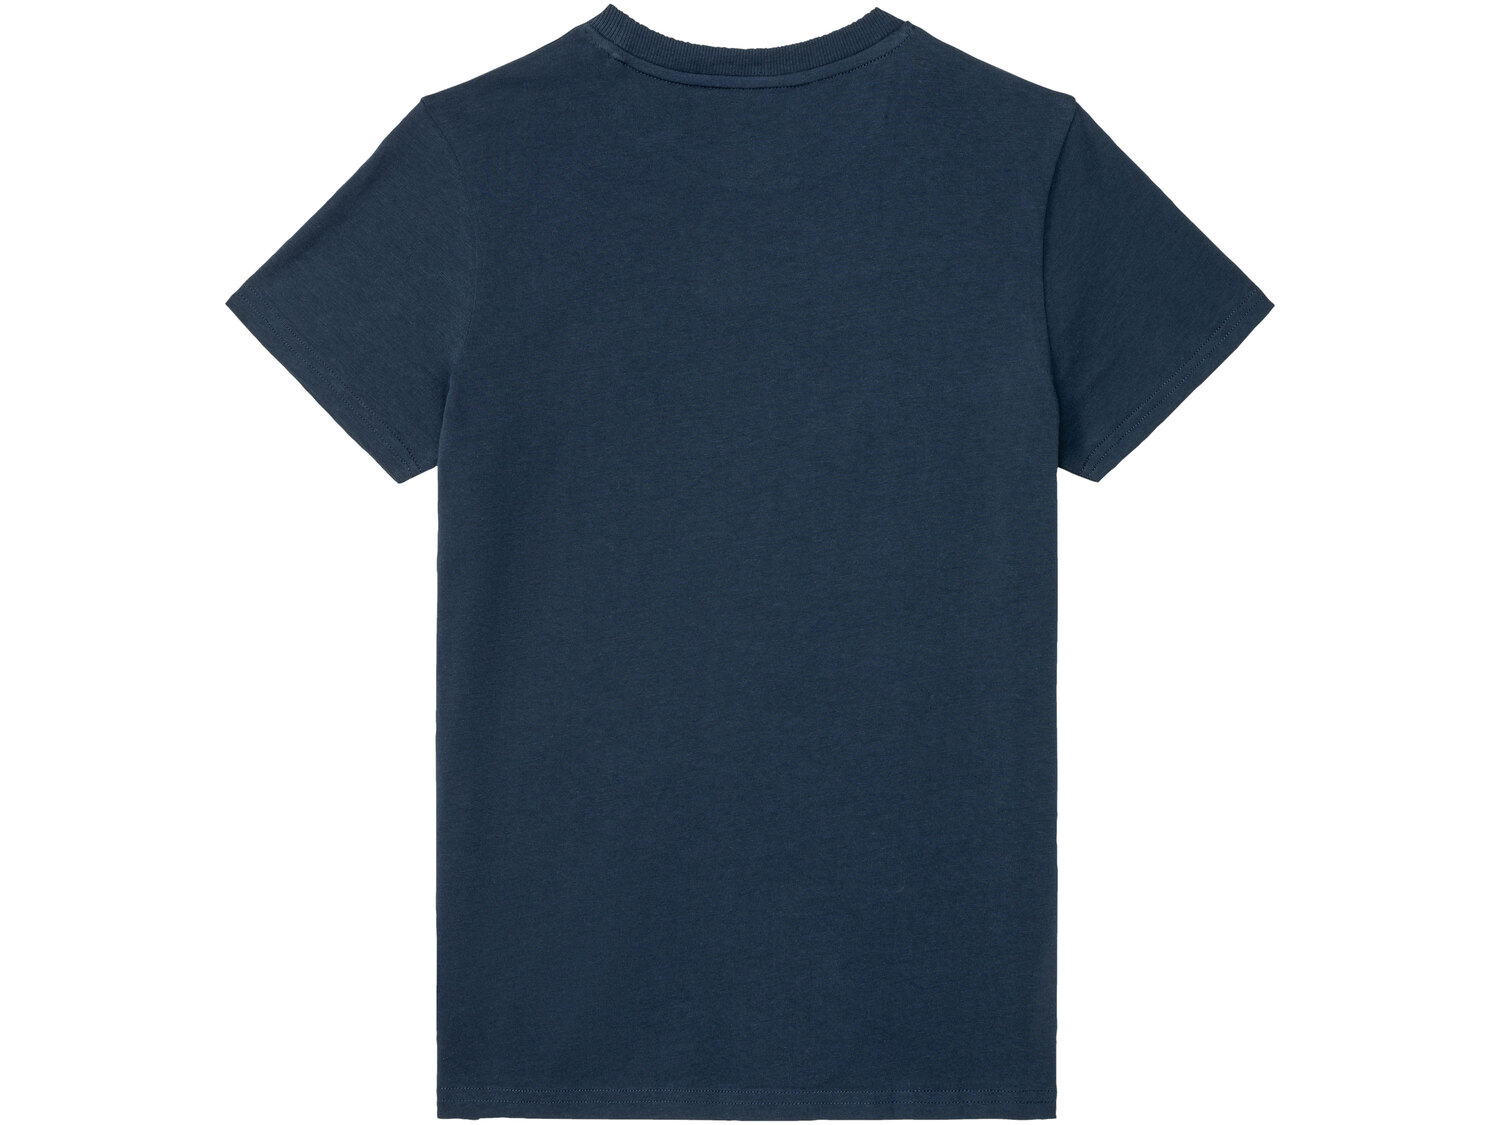 T-shirt chłopięcy z bawełną , cena 9,99 PLN 
- 100% bawełny
- rozmiary: 146-176
* ...